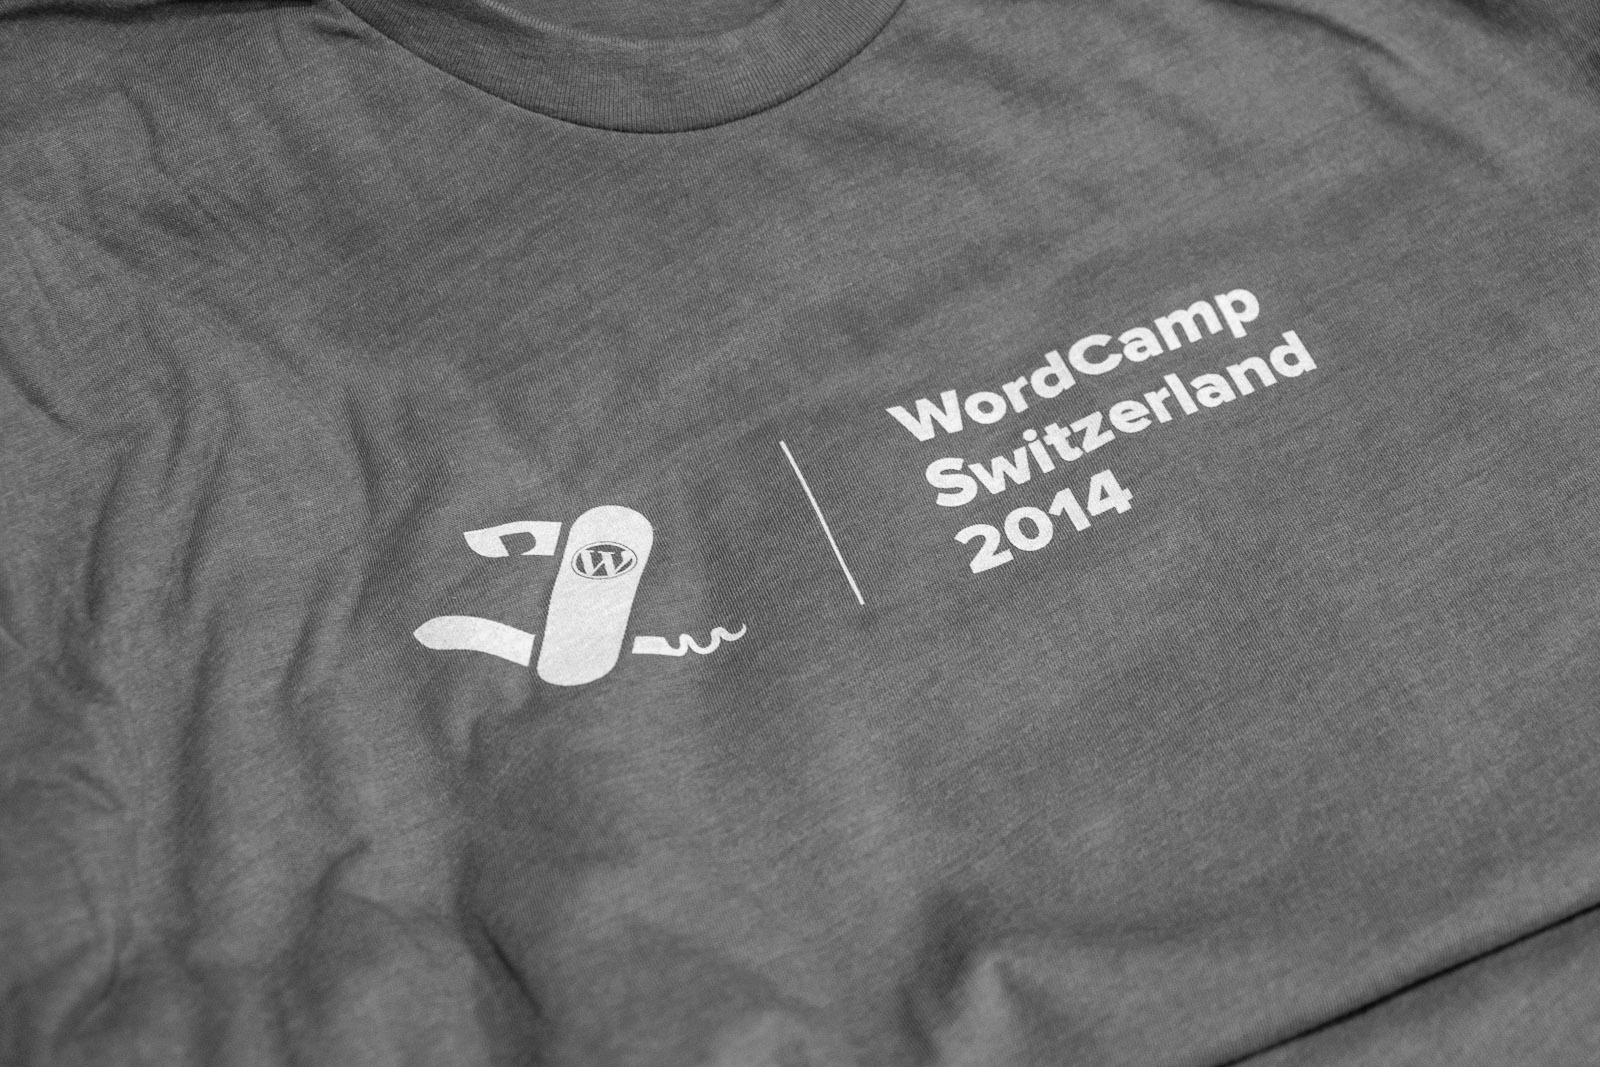 #wcch t-shirt.